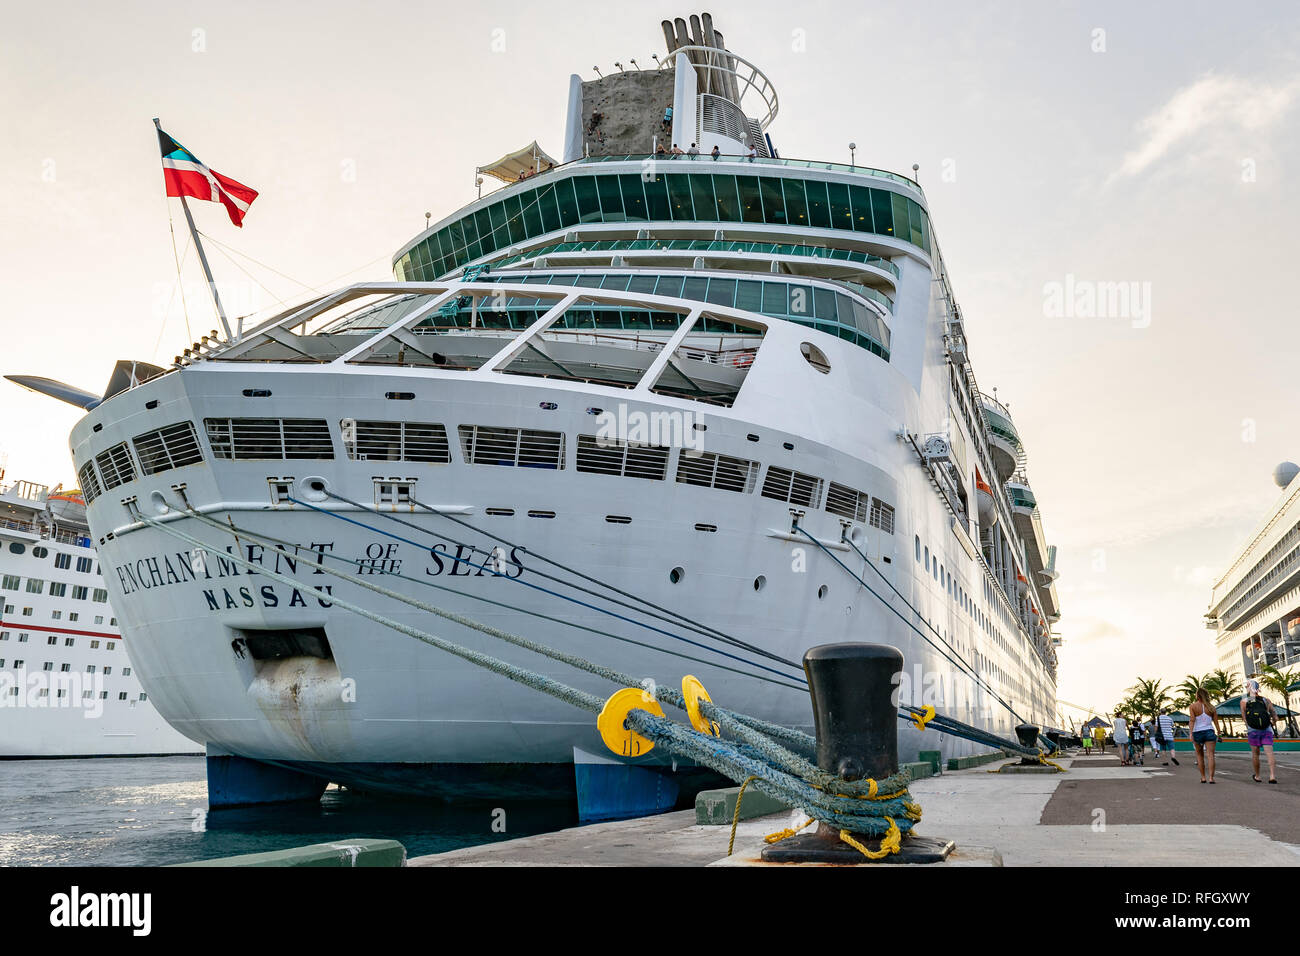 Nassau, Bahamas - 02. Dezember 2015: Royal Caribbean Zauber der Meere Kreuzfahrt Schiff im Hafen im Prince George Wharf in Nassau angedockt Stockfoto